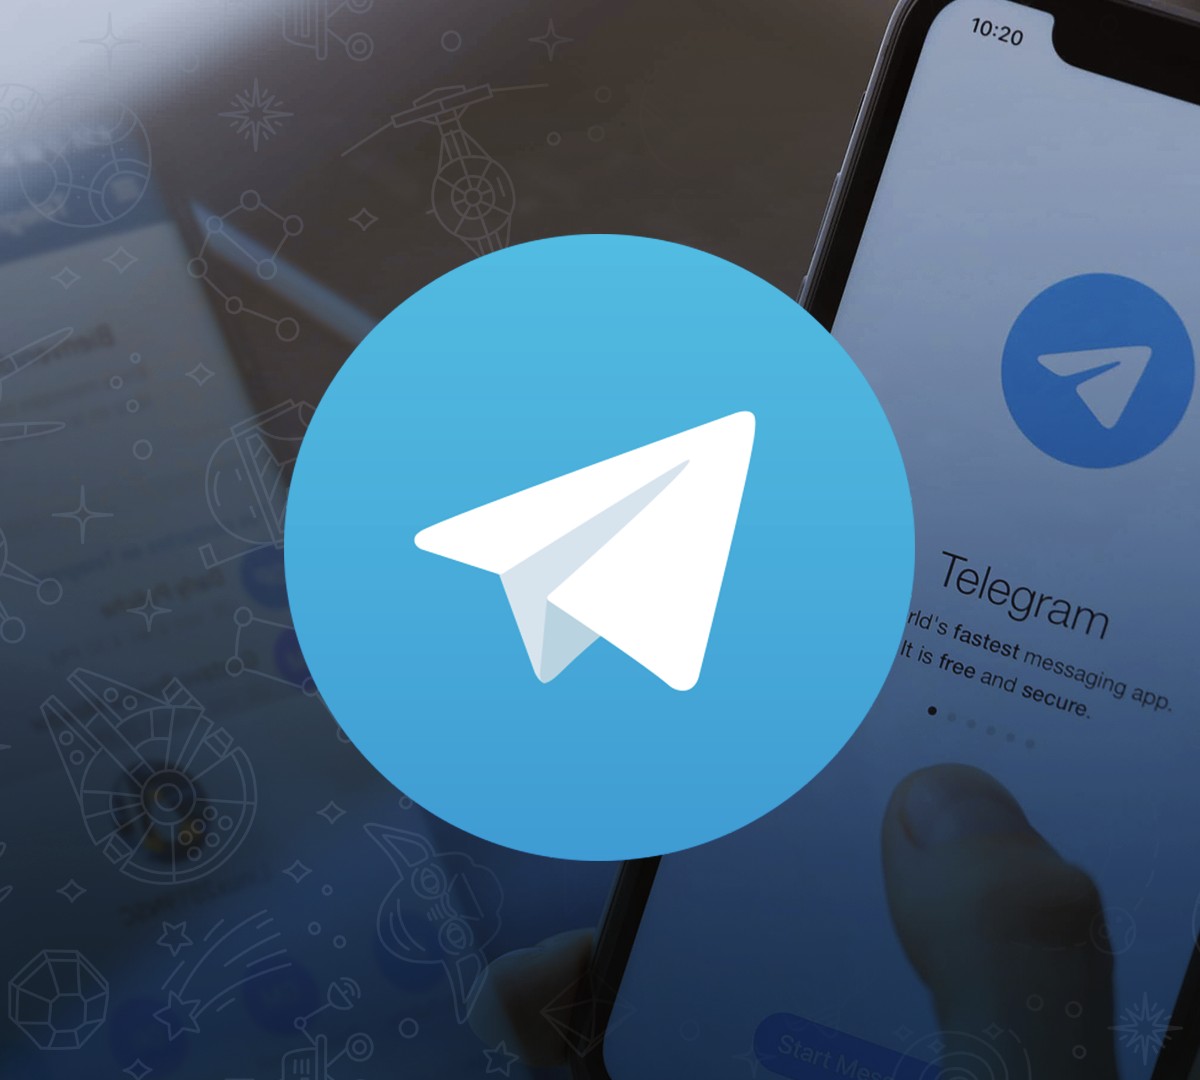 Como ganhar dinheiro no Telegram? Saiba como usuários lucram com o app